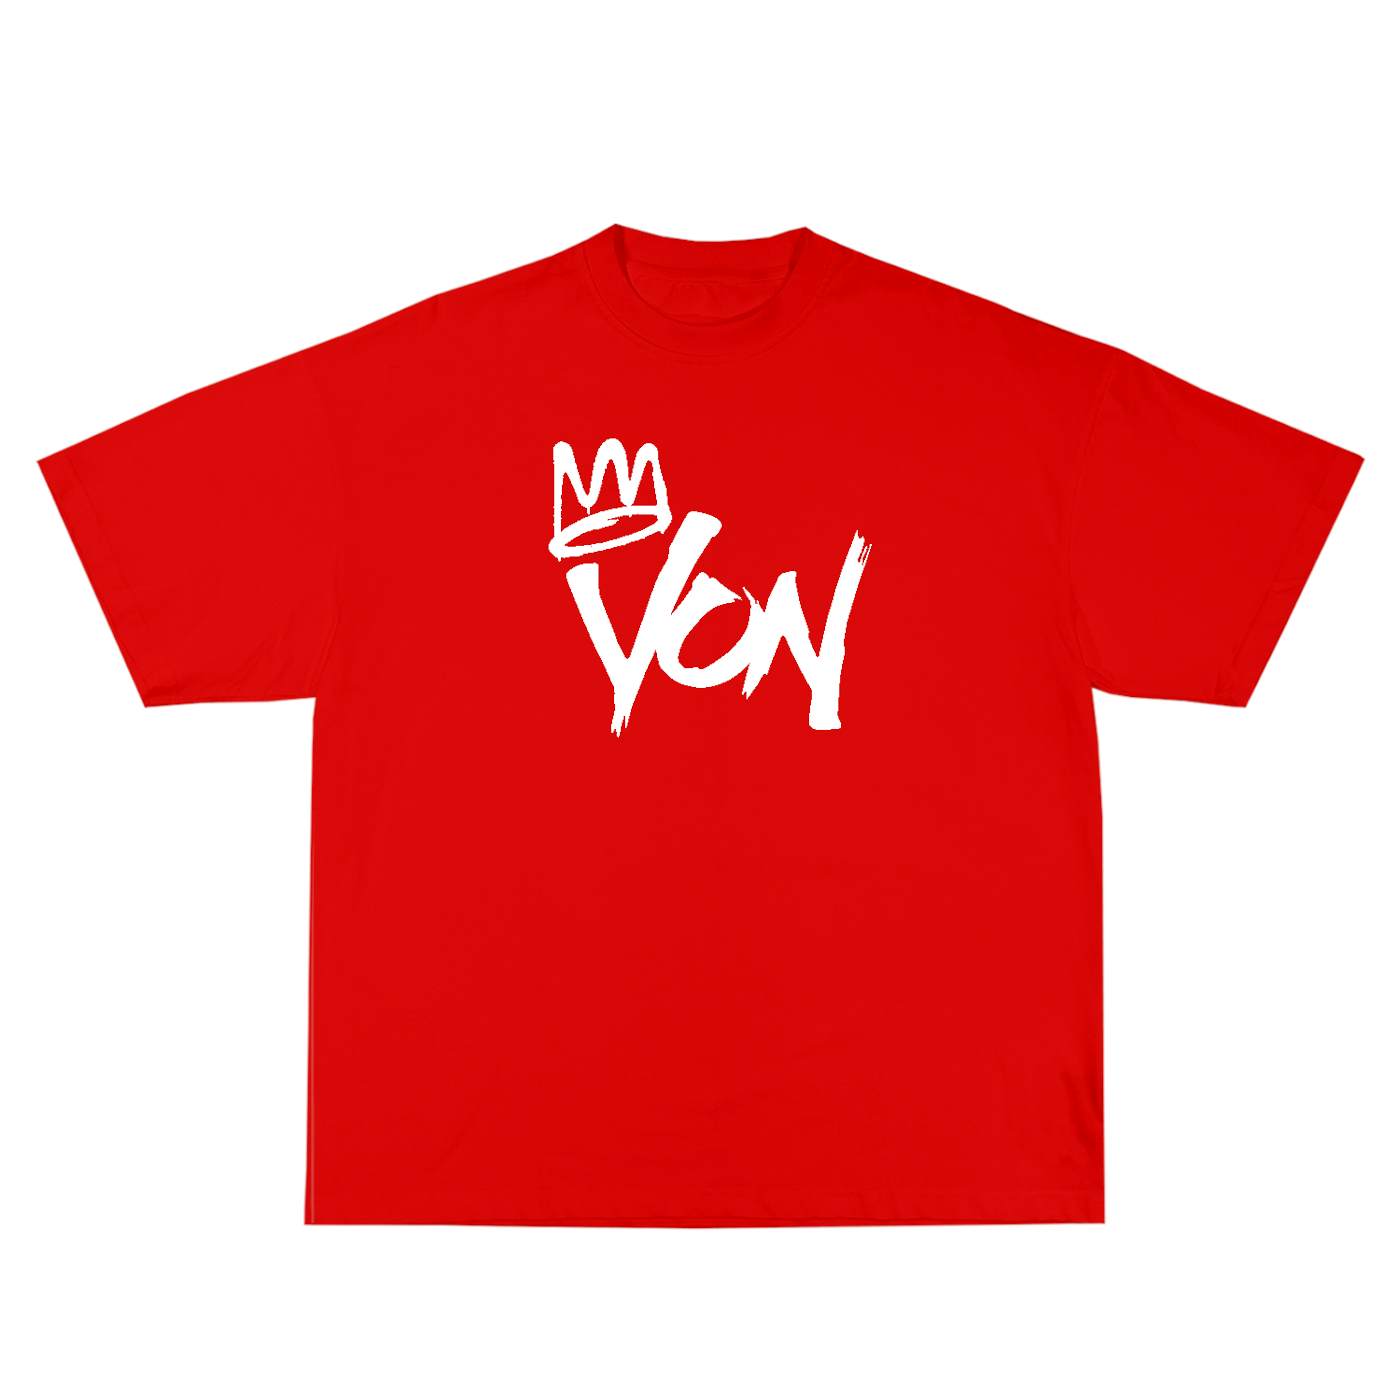 King Von Pastel T-Shirt